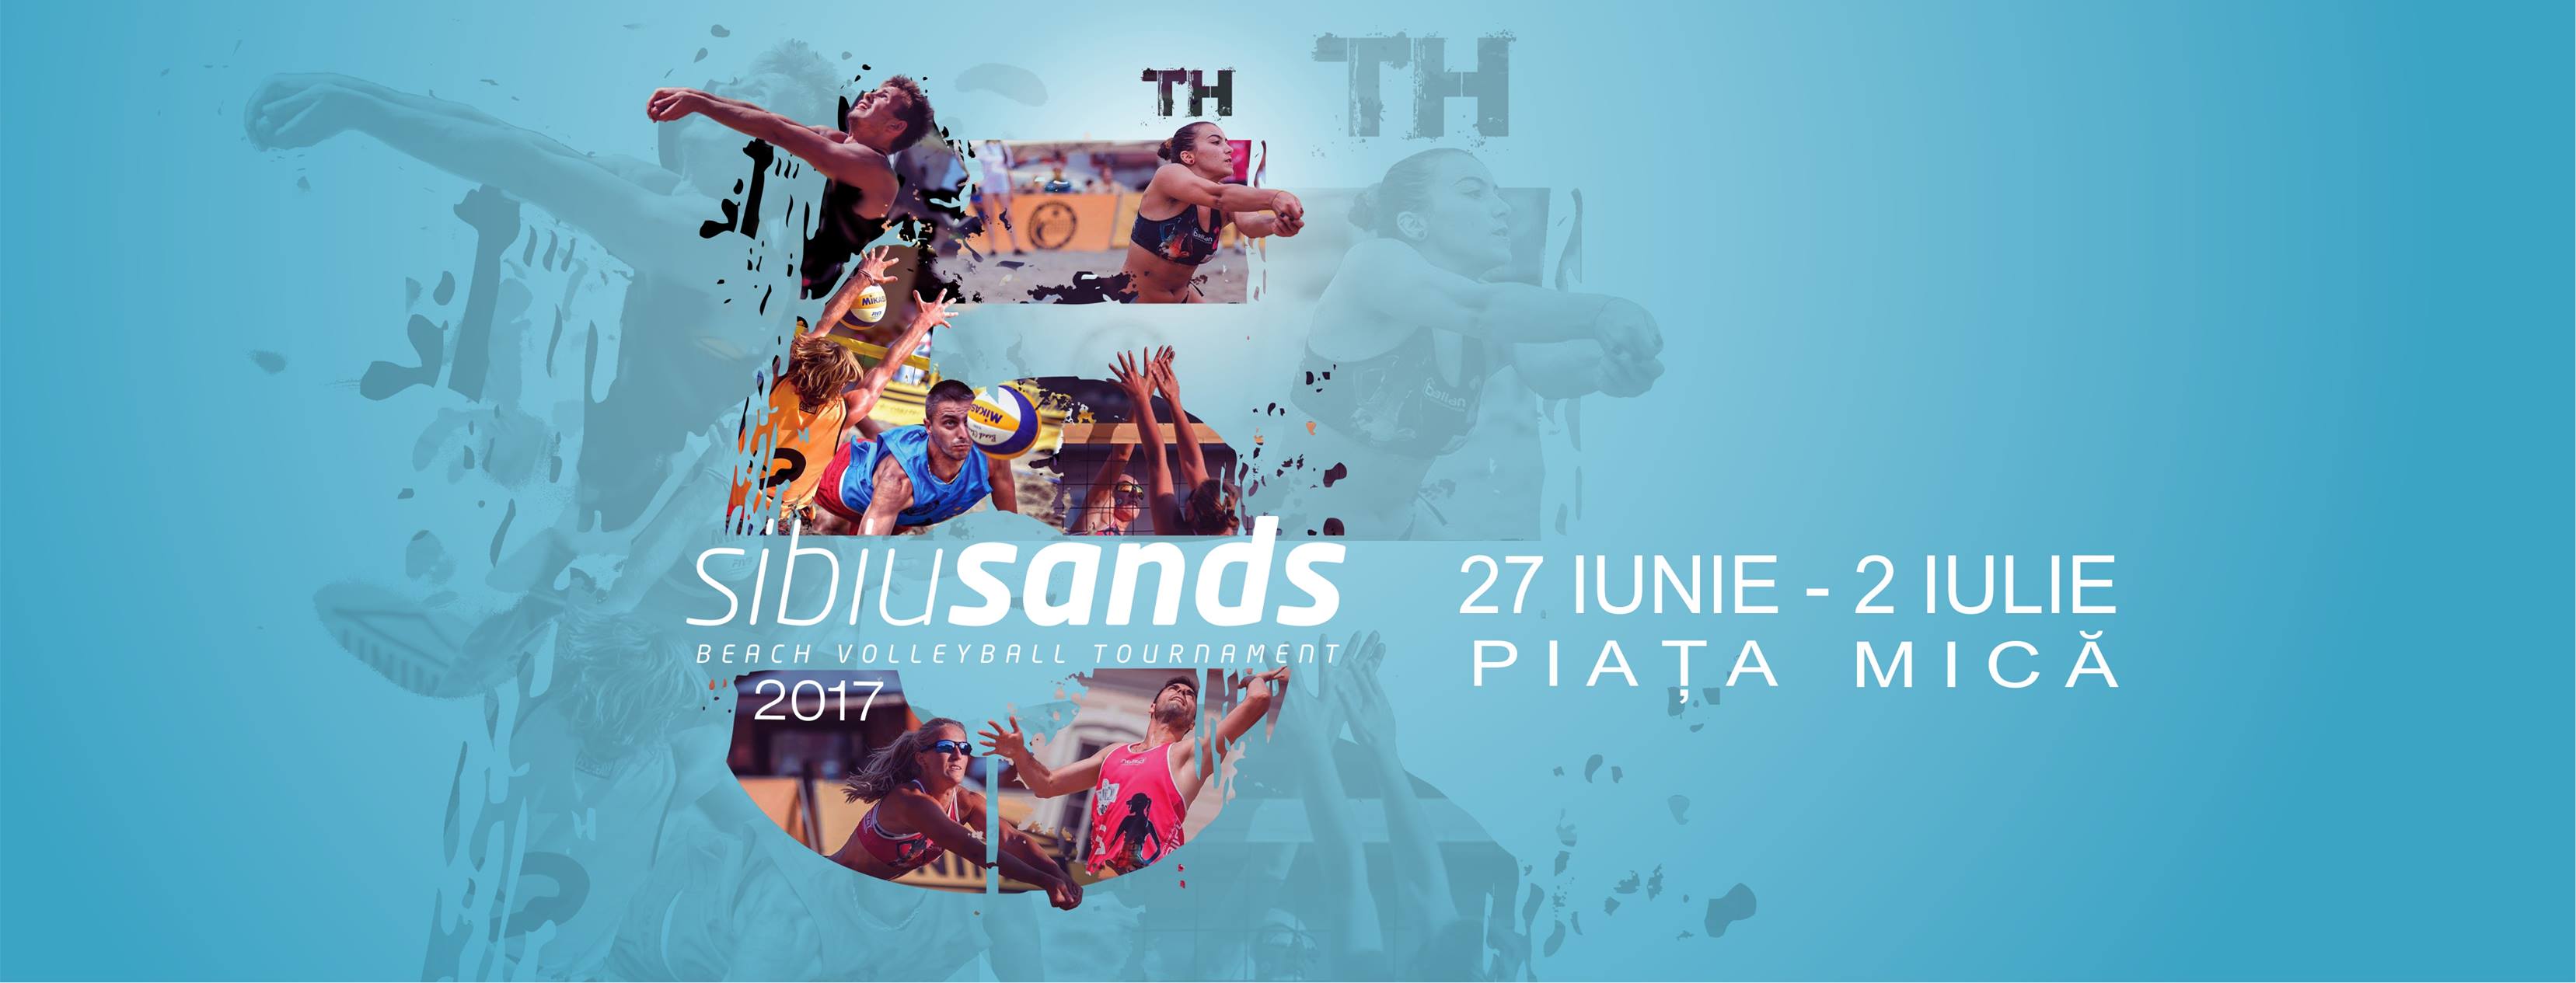 Sibiu Sands – Beach Volleyball Tournament